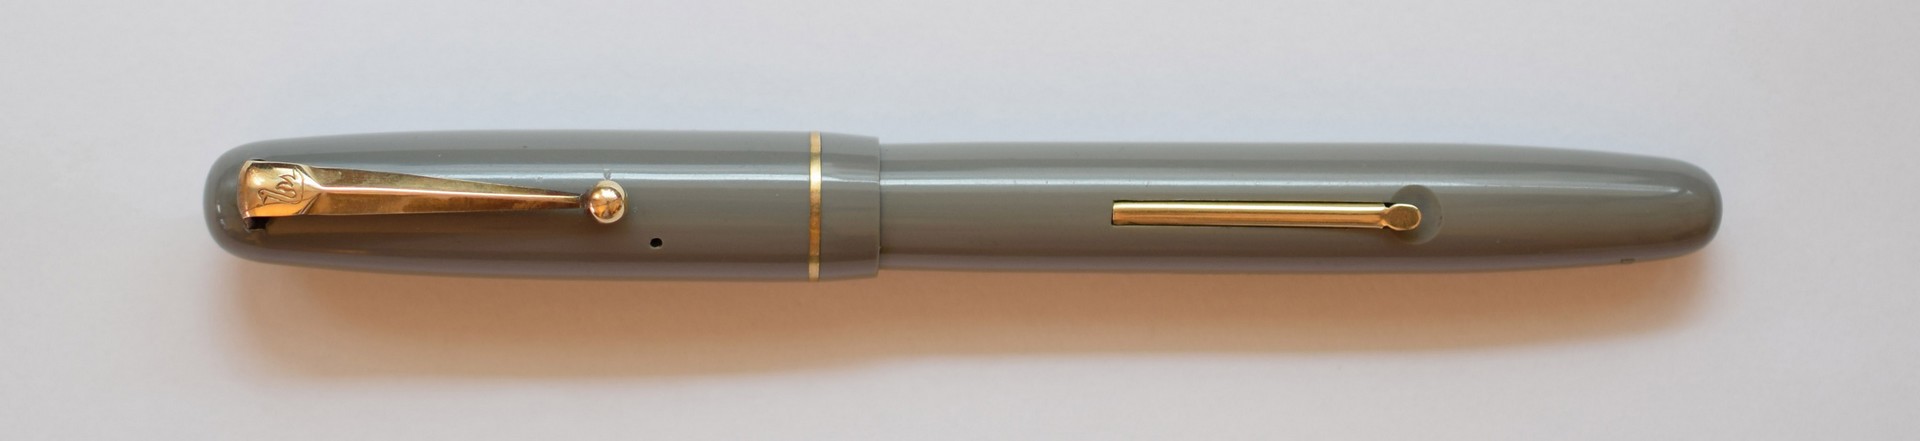 swan pen